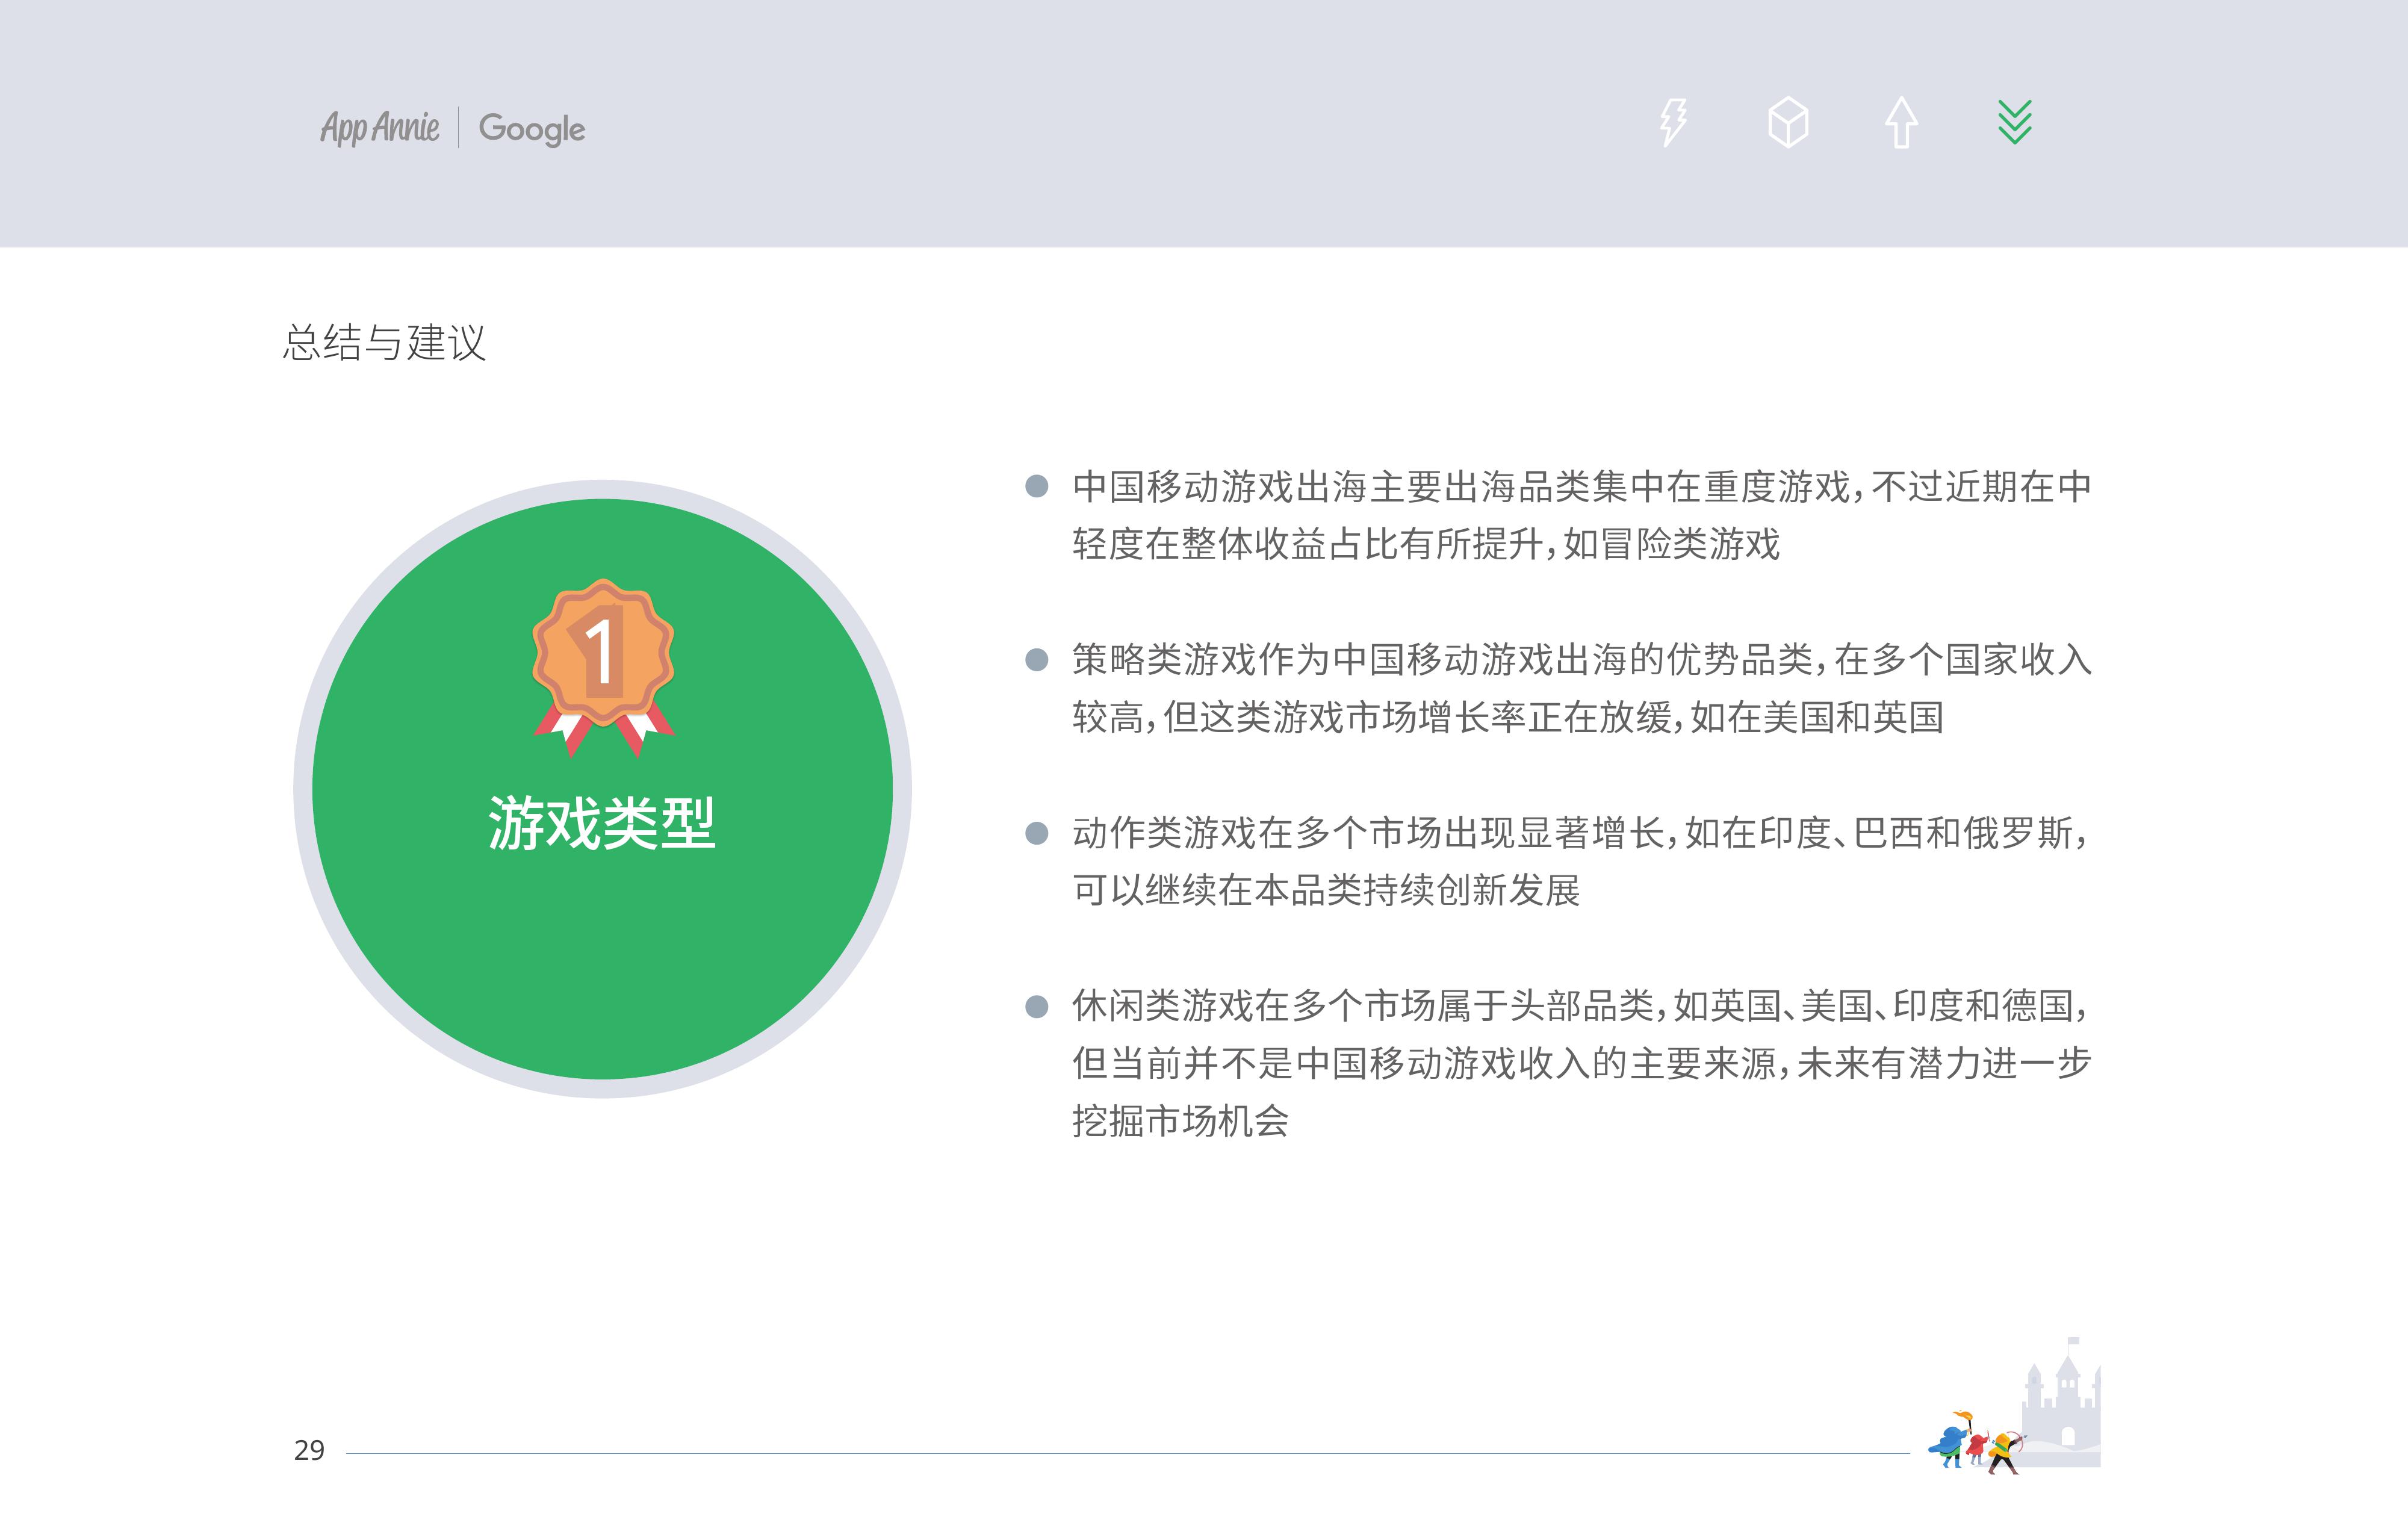 App AnnieGoogle：2019中国移动游戏出海深度洞察报告